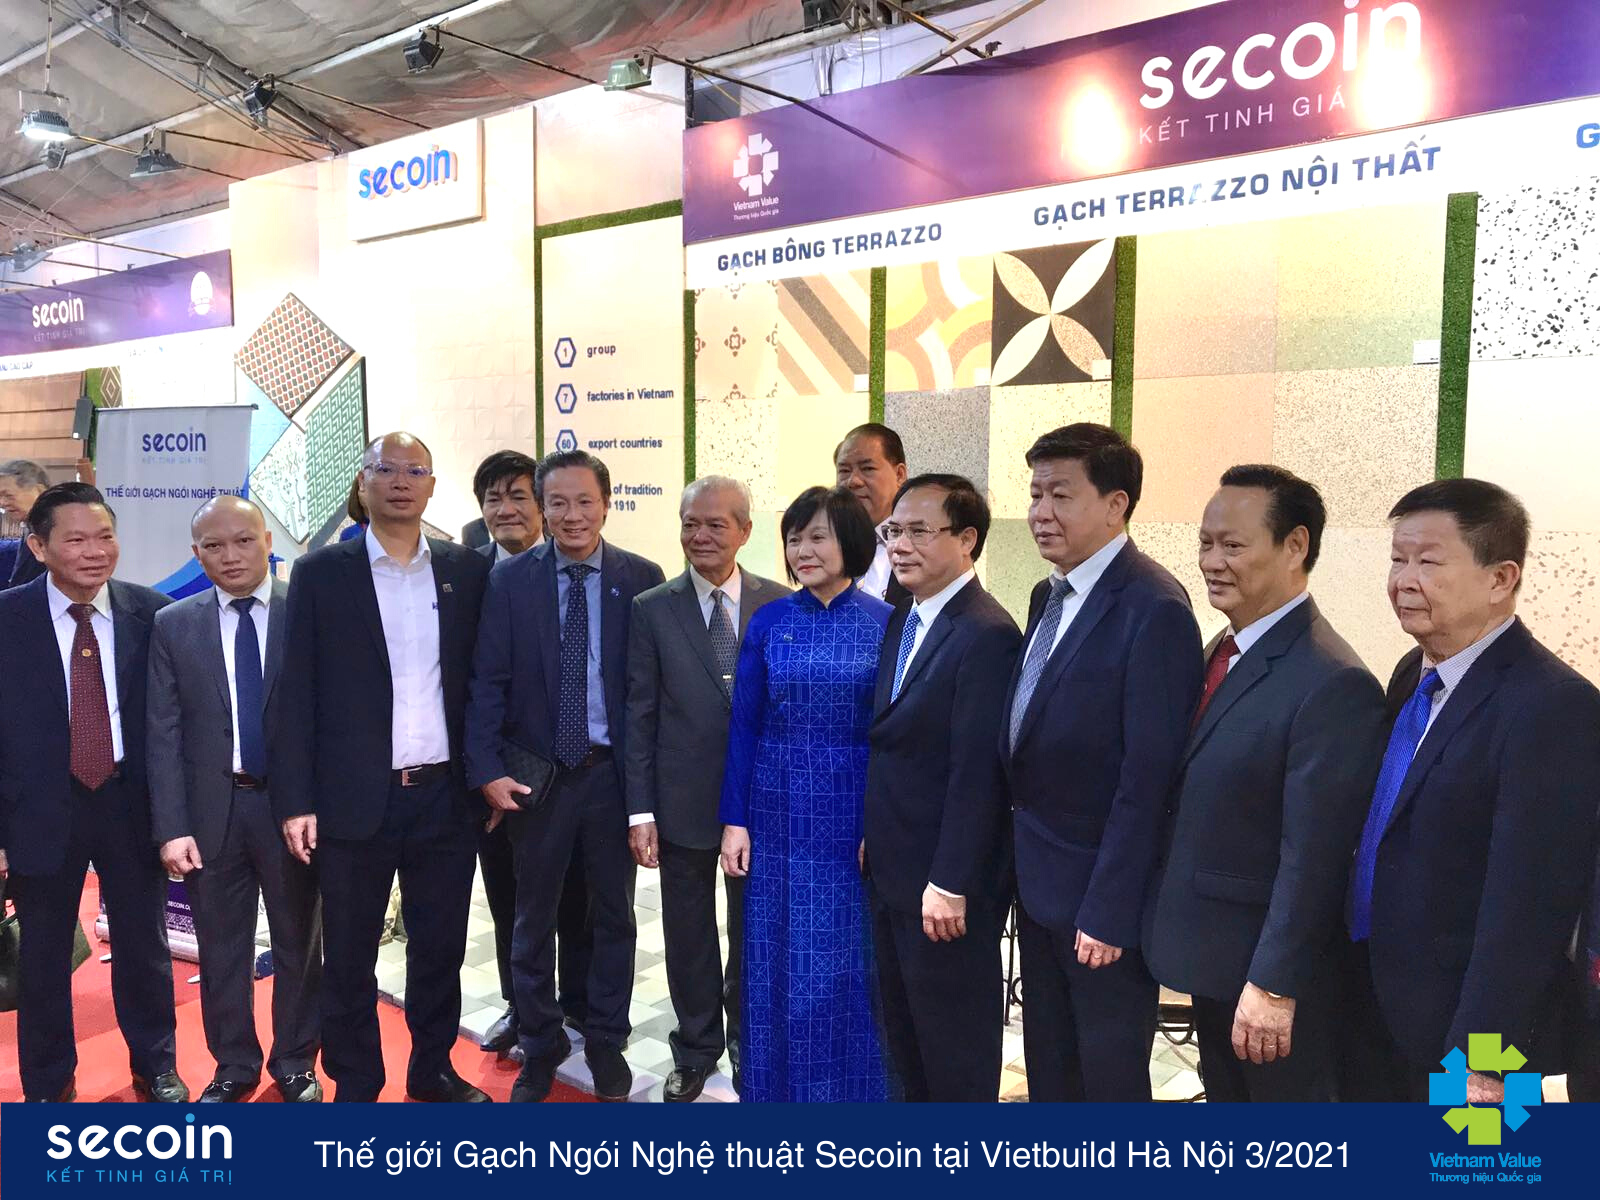 Secoin tham gia Hội chợ Vietbuild Hà Nội 3/2021